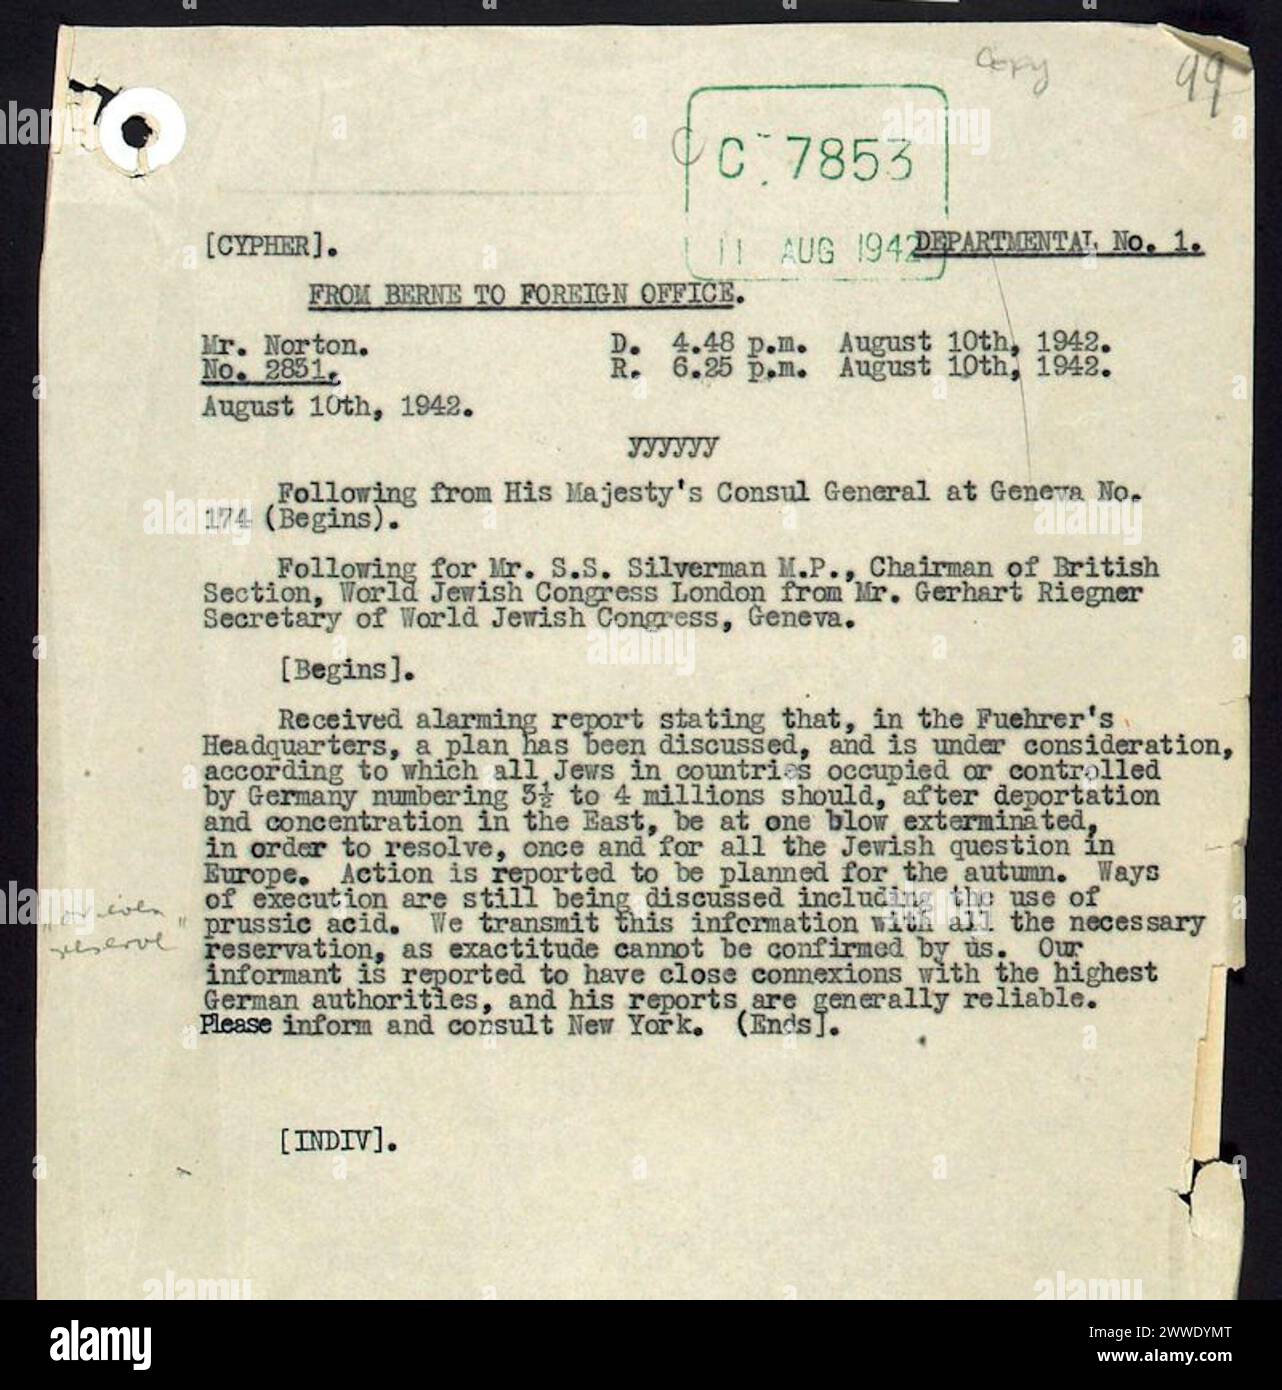 Riegner Telegramm Beschreibung: Dieses Telegramm von Gerhart Riegner, Sekretär des Jüdischen Weltkongresses in Genf, erhielt das Auswärtige Amt im August 1940. Das Telegramm gehörte zu den ersten eindeutigen Beweisen, die die Alliierten erhielten, dass die Naziregierung eine „endgültige Lösung“ der „Judenfrage“ plante. Einige Kommentare in der Akte zeigen, dass Beamte das Telegramm benutzen sollten, um den Vatikan zu beeinflussen, um deutsche Gräueltaten härter zu verurteilen. Ein anderer Beamter weist Riegners Bericht als "ziemlich wilde Geschichte" ab. Samuel Sydney Silverman, das Telegramm ist inten Stockfoto